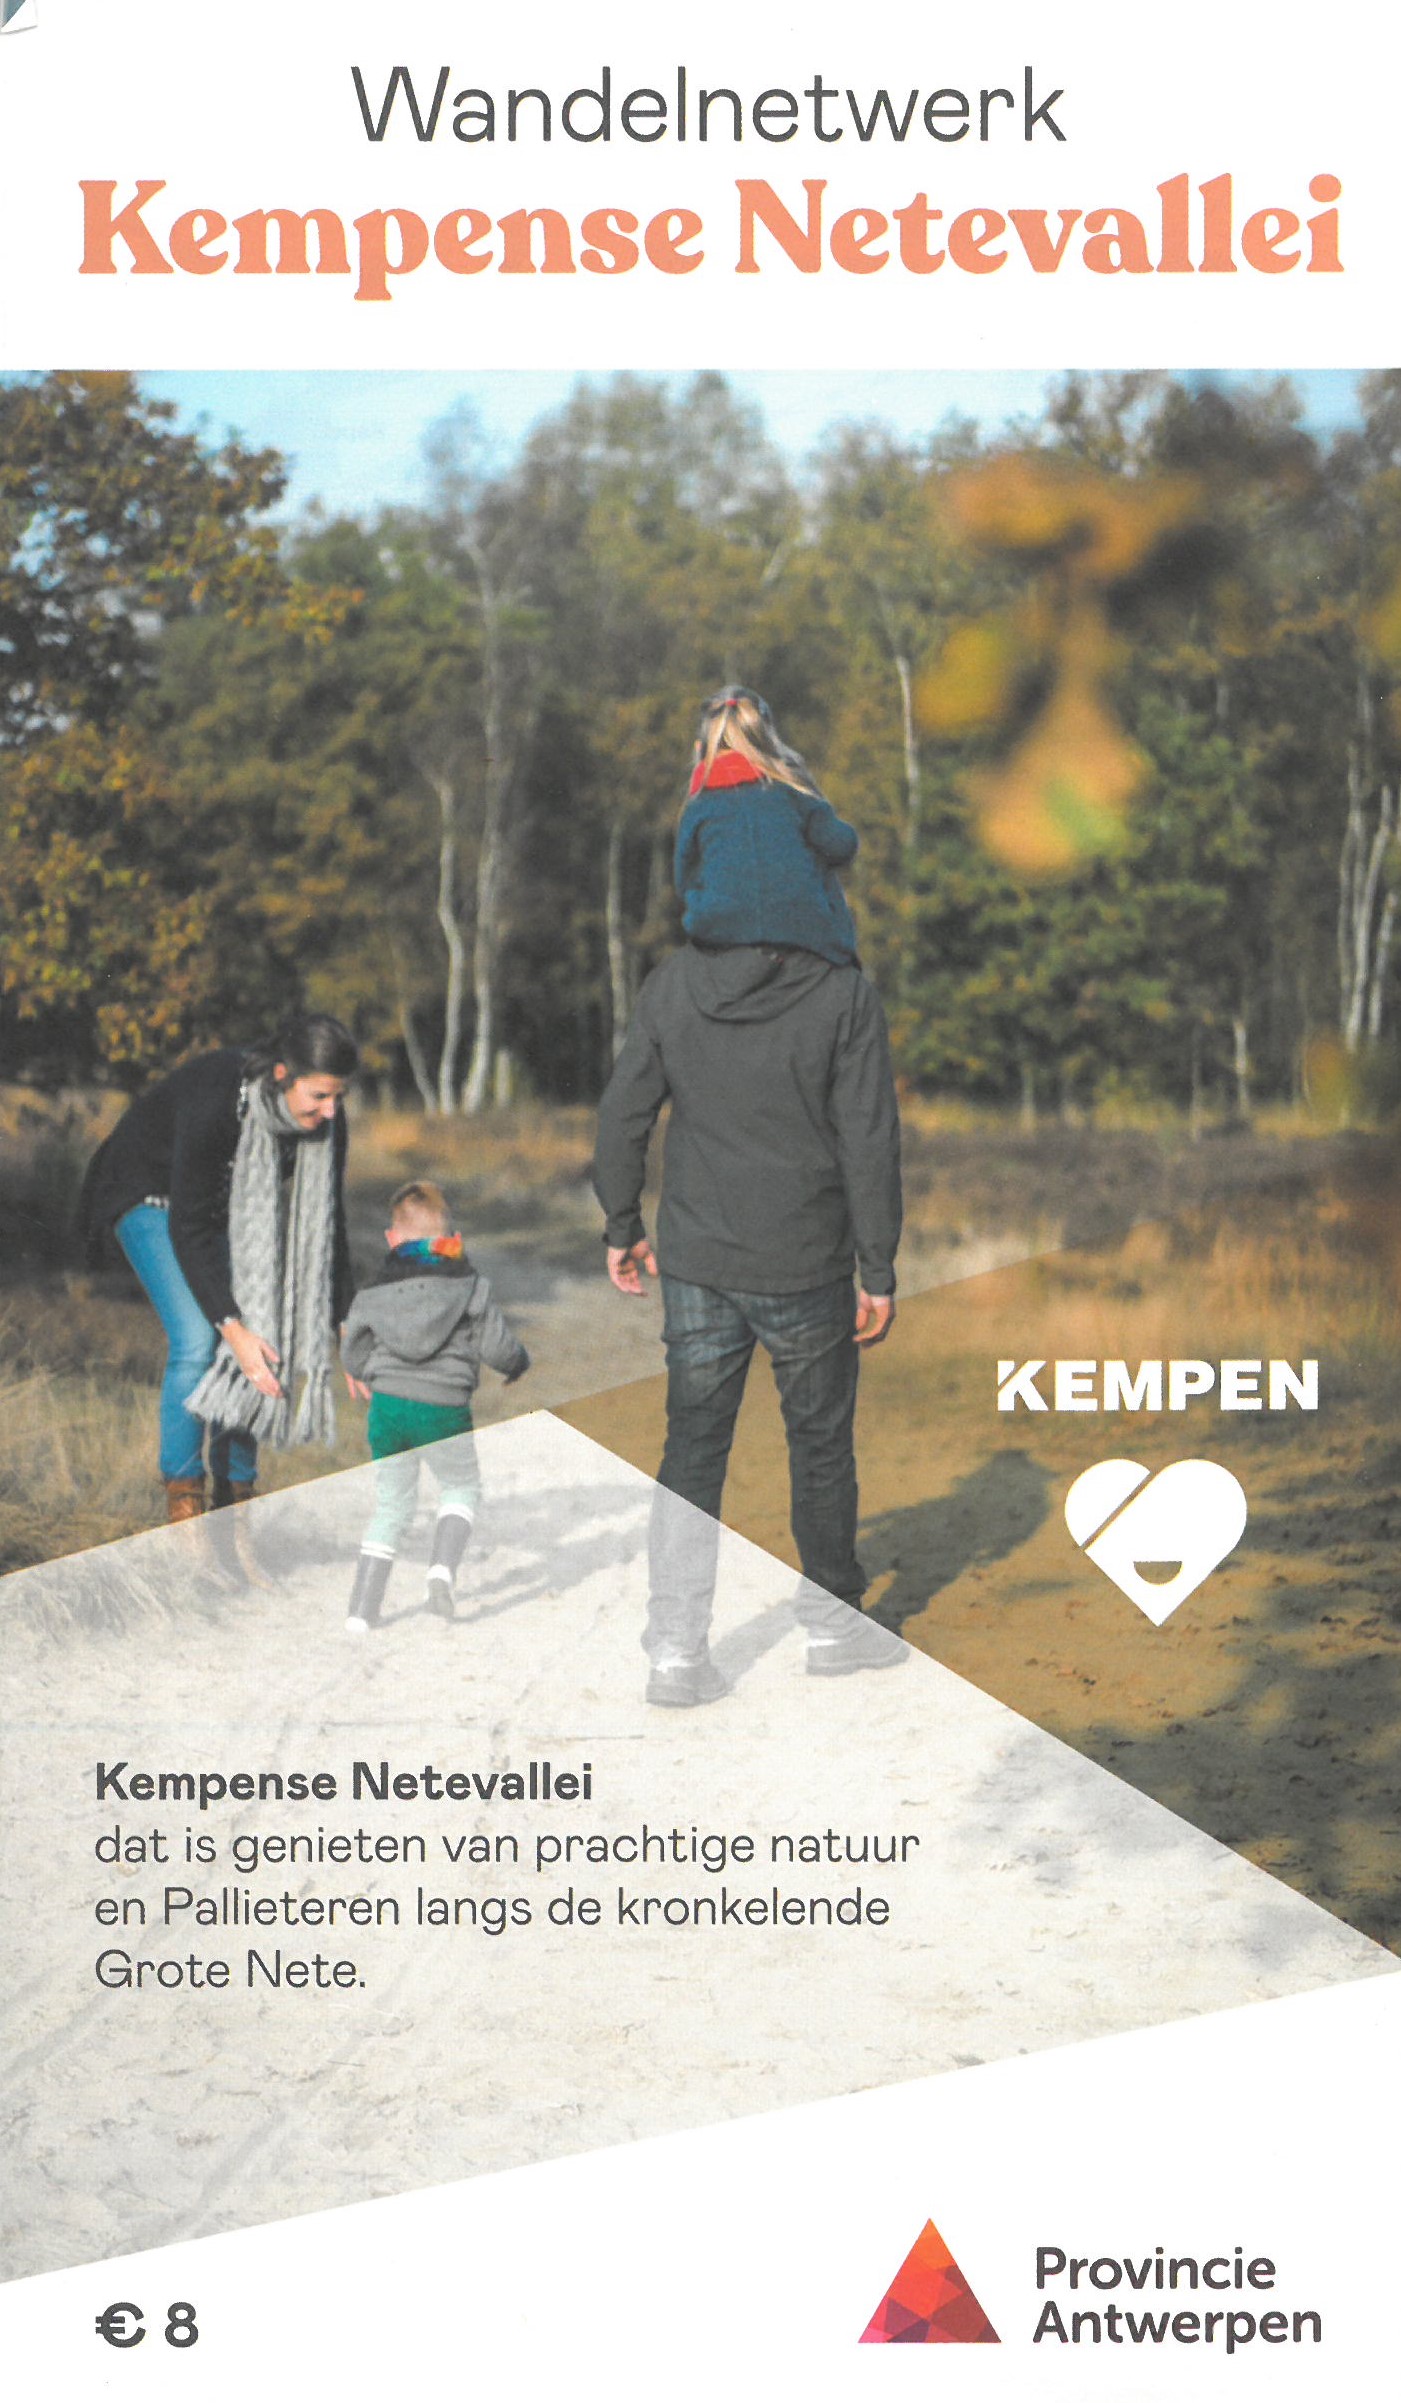 Online bestellen: Wandelknooppuntenkaart Wandelnetwerk BE Kempense Netevallei | Provincie Antwerpen Toerisme